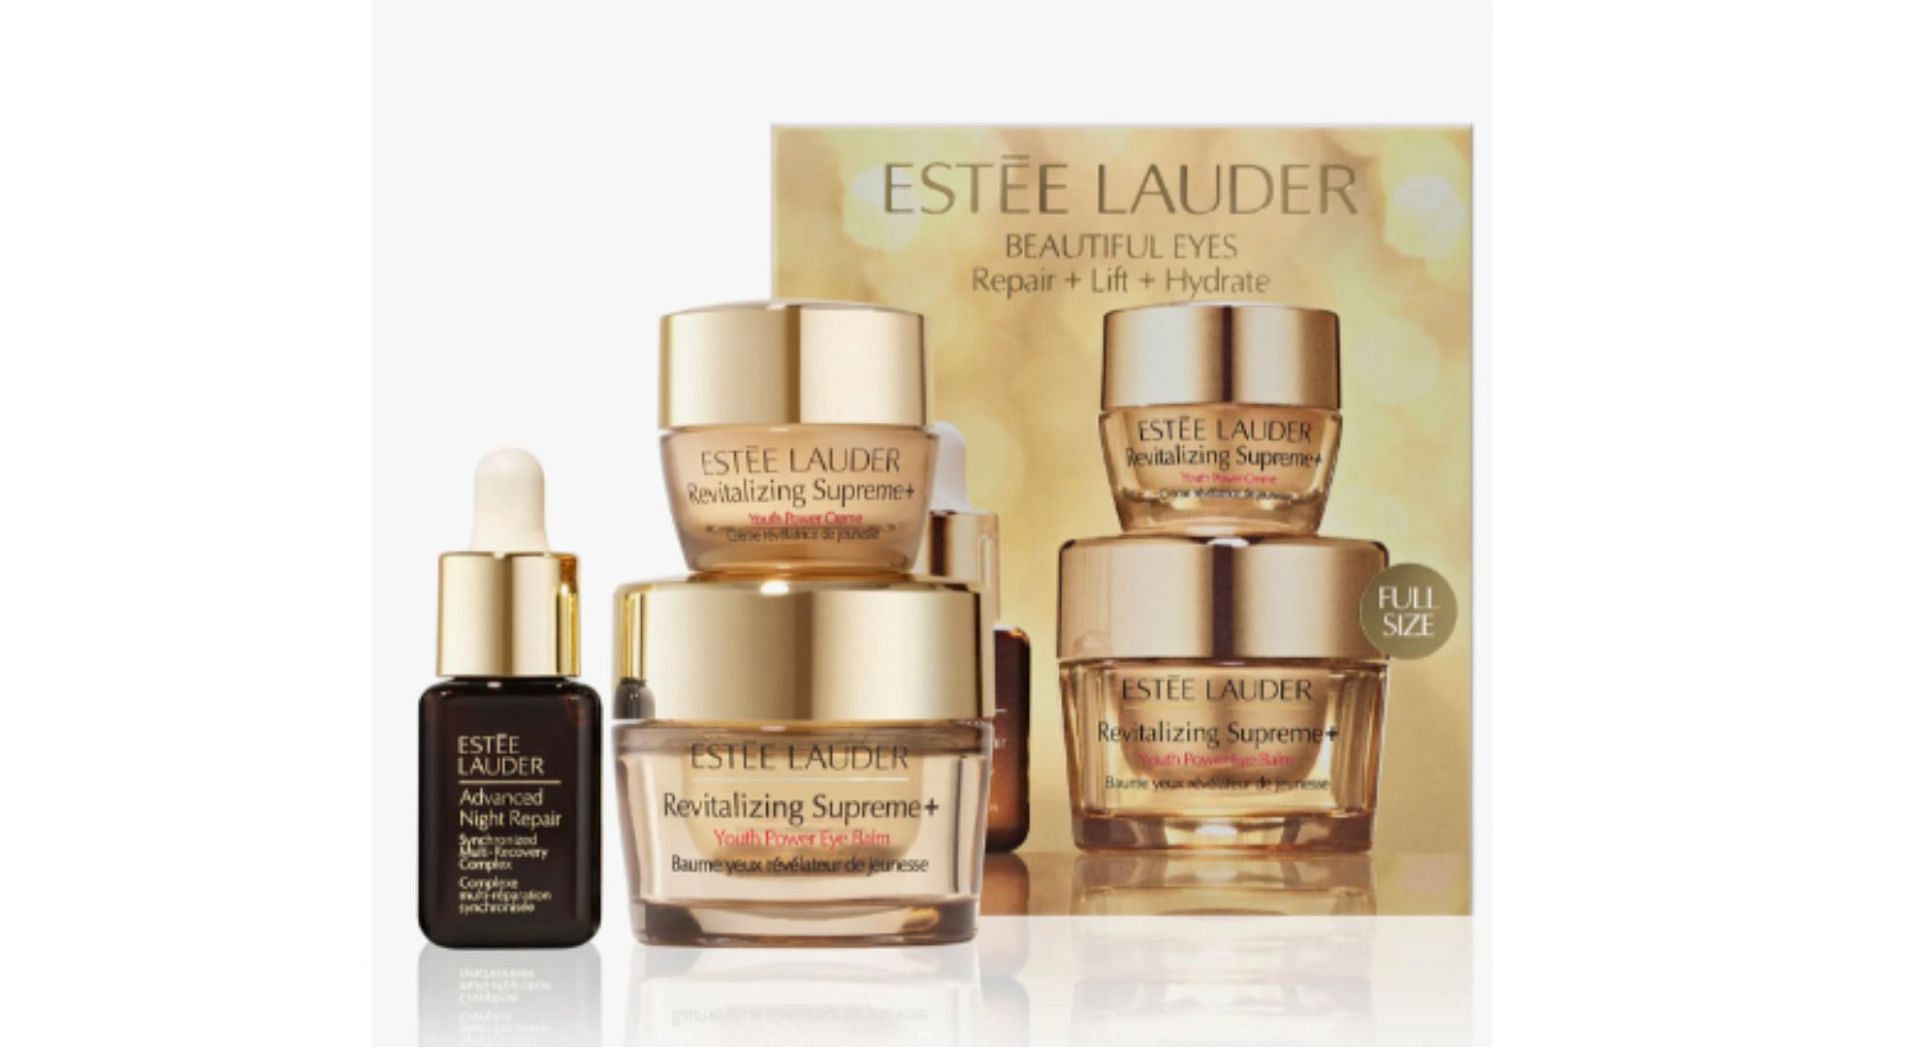 Estée Lauder Revitalizing Supreme+ Eye Balm Skin Care Set (Limited Edition) (Image via Nordstrom)